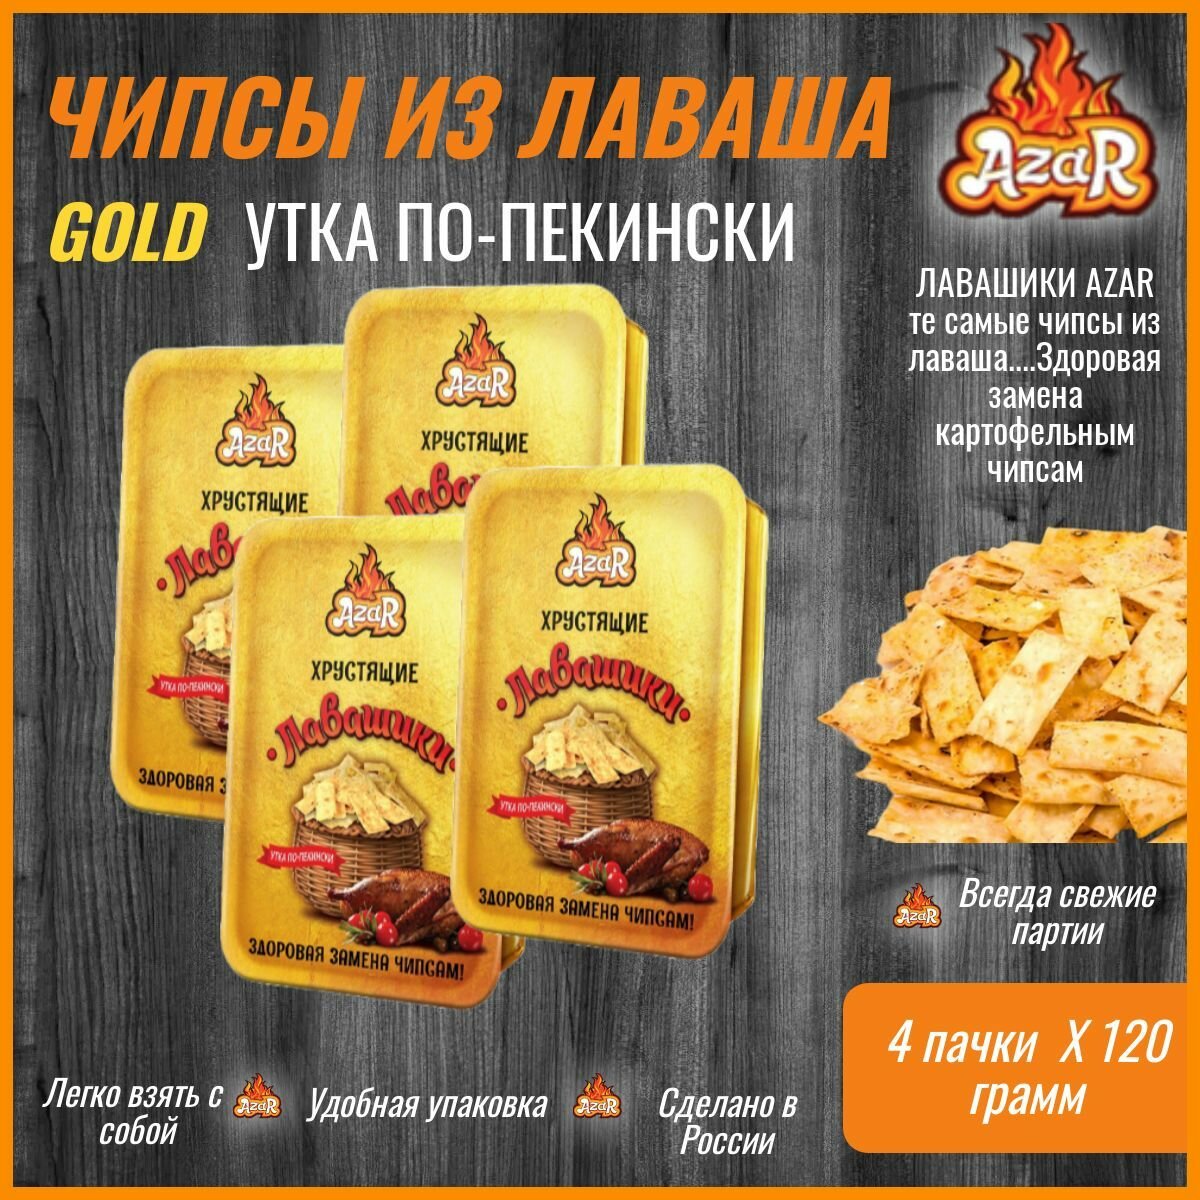 Хрустящие лавашики GOLD Утка по-Пекински, чипсы из лаваша "AzaR" 4 шт по 120г.